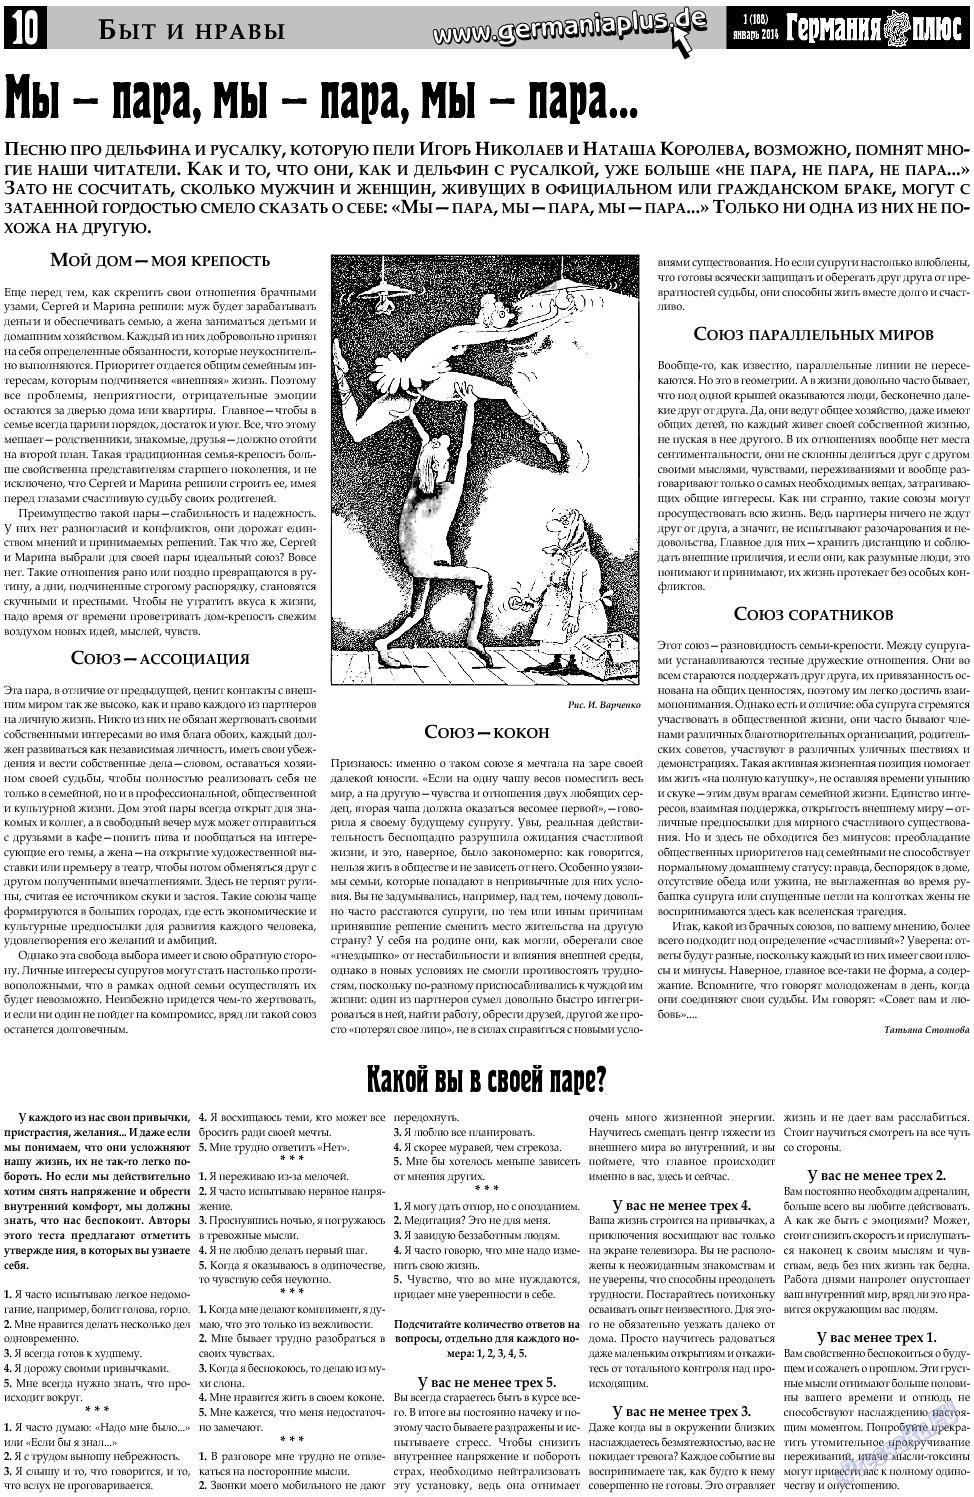 Германия плюс, газета. 2014 №1 стр.10